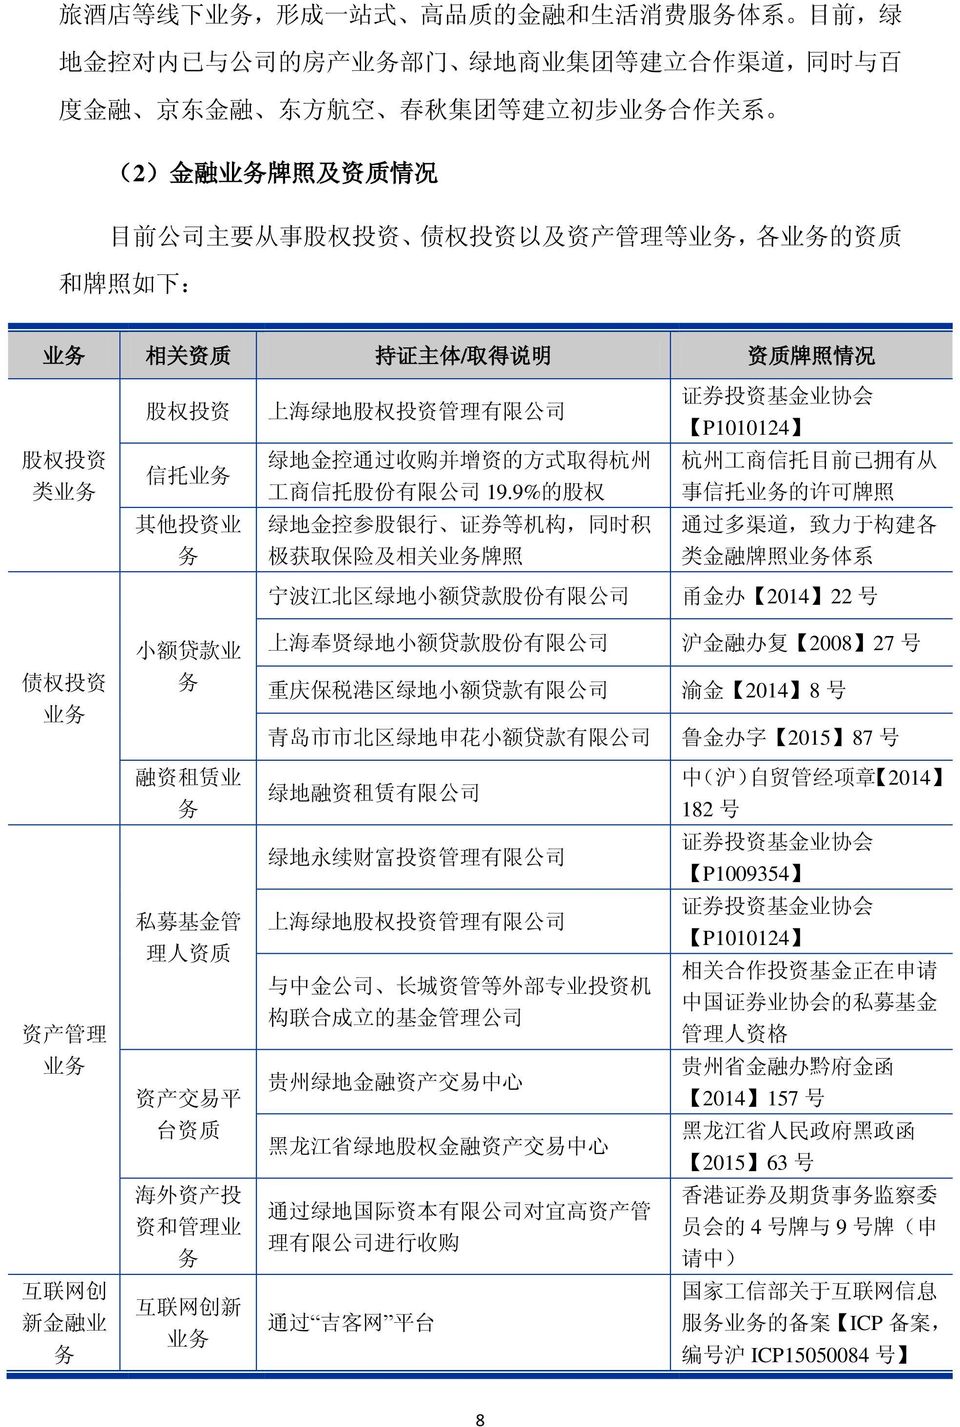 业 务 信 托 业 务 绿 地 金 控 通 过 收 购 并 增 资 的 方 式 取 得 杭 州 工 商 信 托 股 份 有 限 公 司 19.